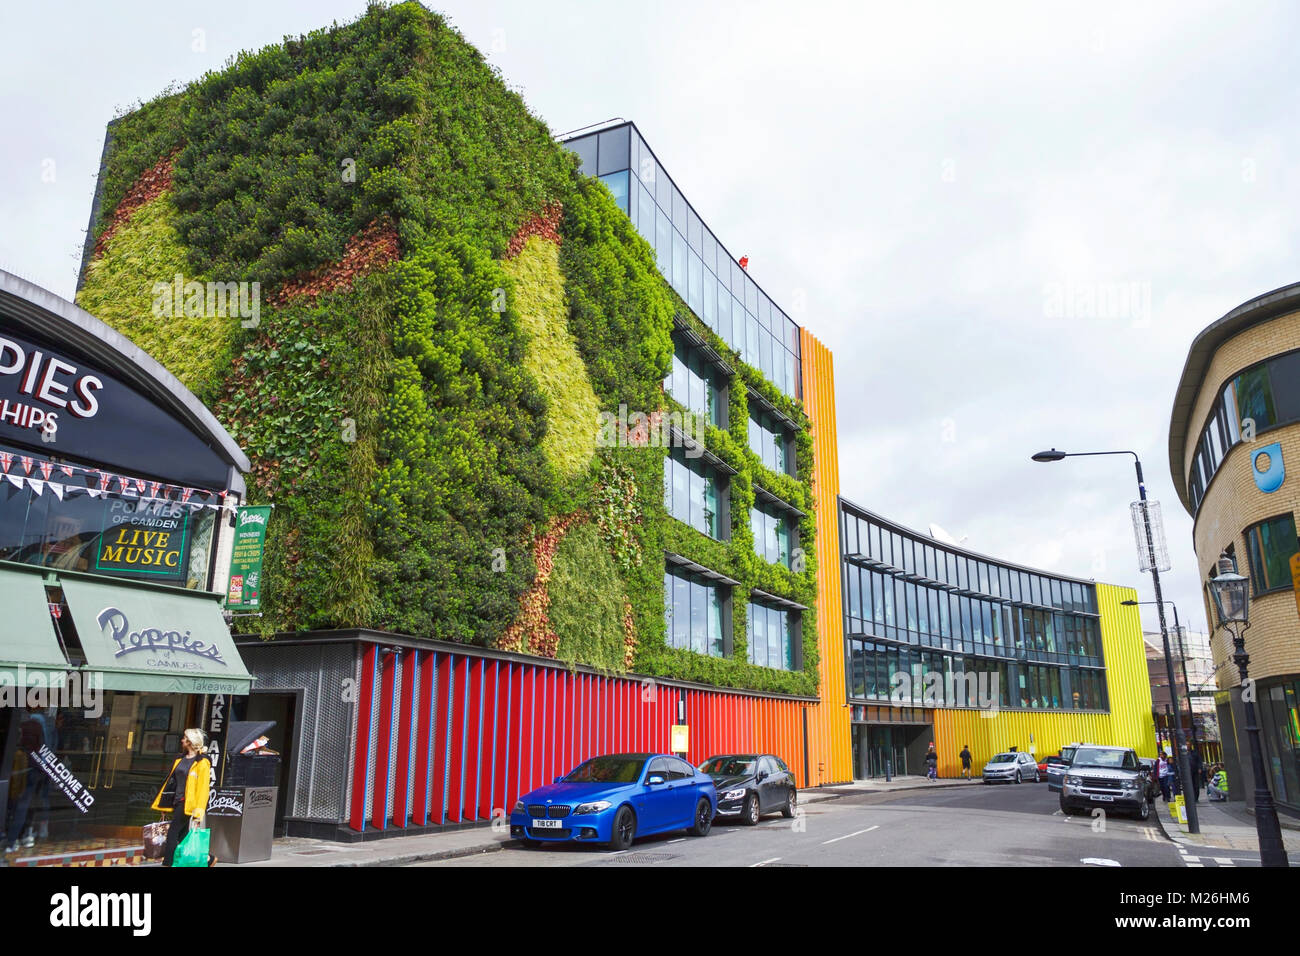 MTV camden. MTV Europa. Edificio con parete vivente. Londra, NW1, Regno Unito. Progettazione ambientale. Sostenibilità. Foto Stock